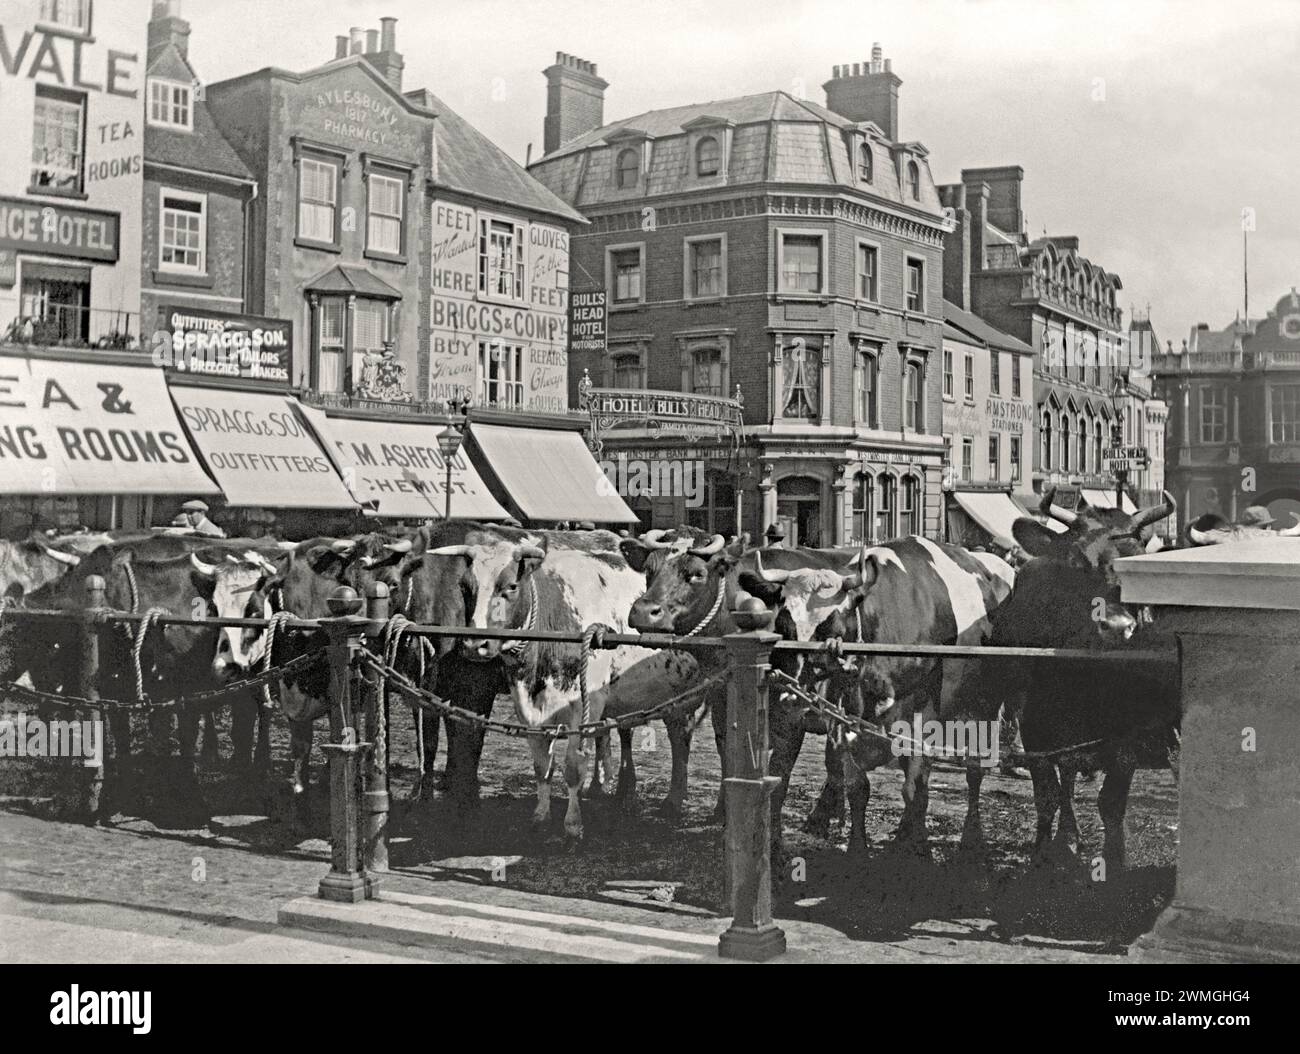 Die Rinder reihten sich Anfang des 20. Jahrhunderts auf dem Viehmarkt am Market Square in Aylesbury, Buckinghamshire, England, Großbritannien. Das reiche und fruchtbare Vale of Aylesbury war perfekt für die Landwirtschaft und es gab zweimal wöchentlich einen Schaf-, Schweine- und Rindermarkt auf dem zentralen Platz von 1204 bis 1927, als der Markt verlagert wurde. Alte Gebäude wie Geschäfte, Banken und Hotels umgaben den Platz, viele werben sich auf ihren Markisen. Dieses Bild stammt von einem alten Glasnegativ – einem alten viktorianischen/edwardianischen Foto. Stockfoto